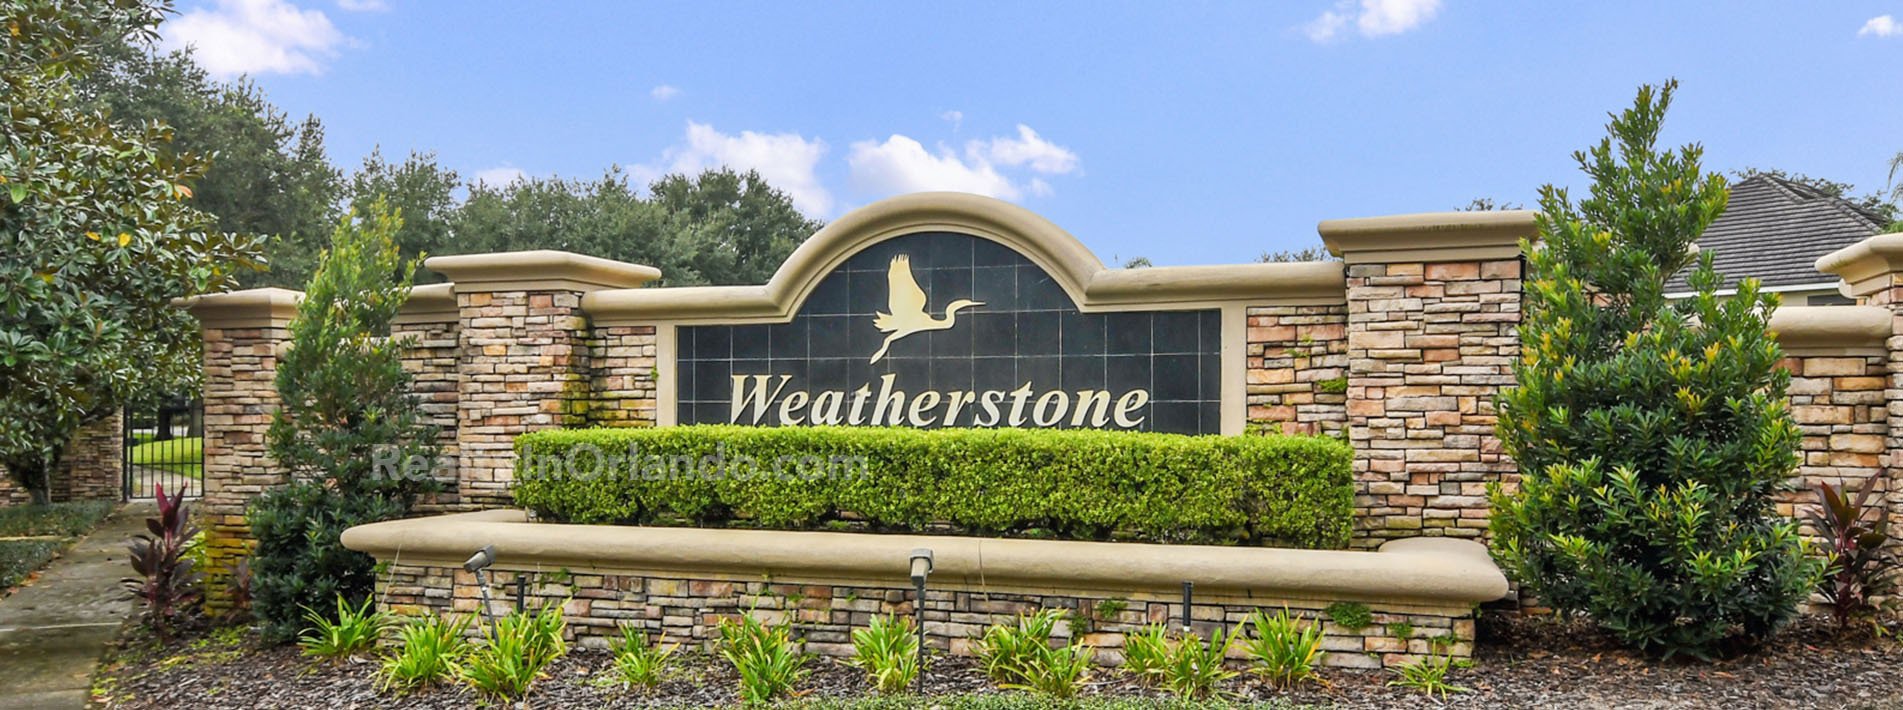 Weatherstone Windermere